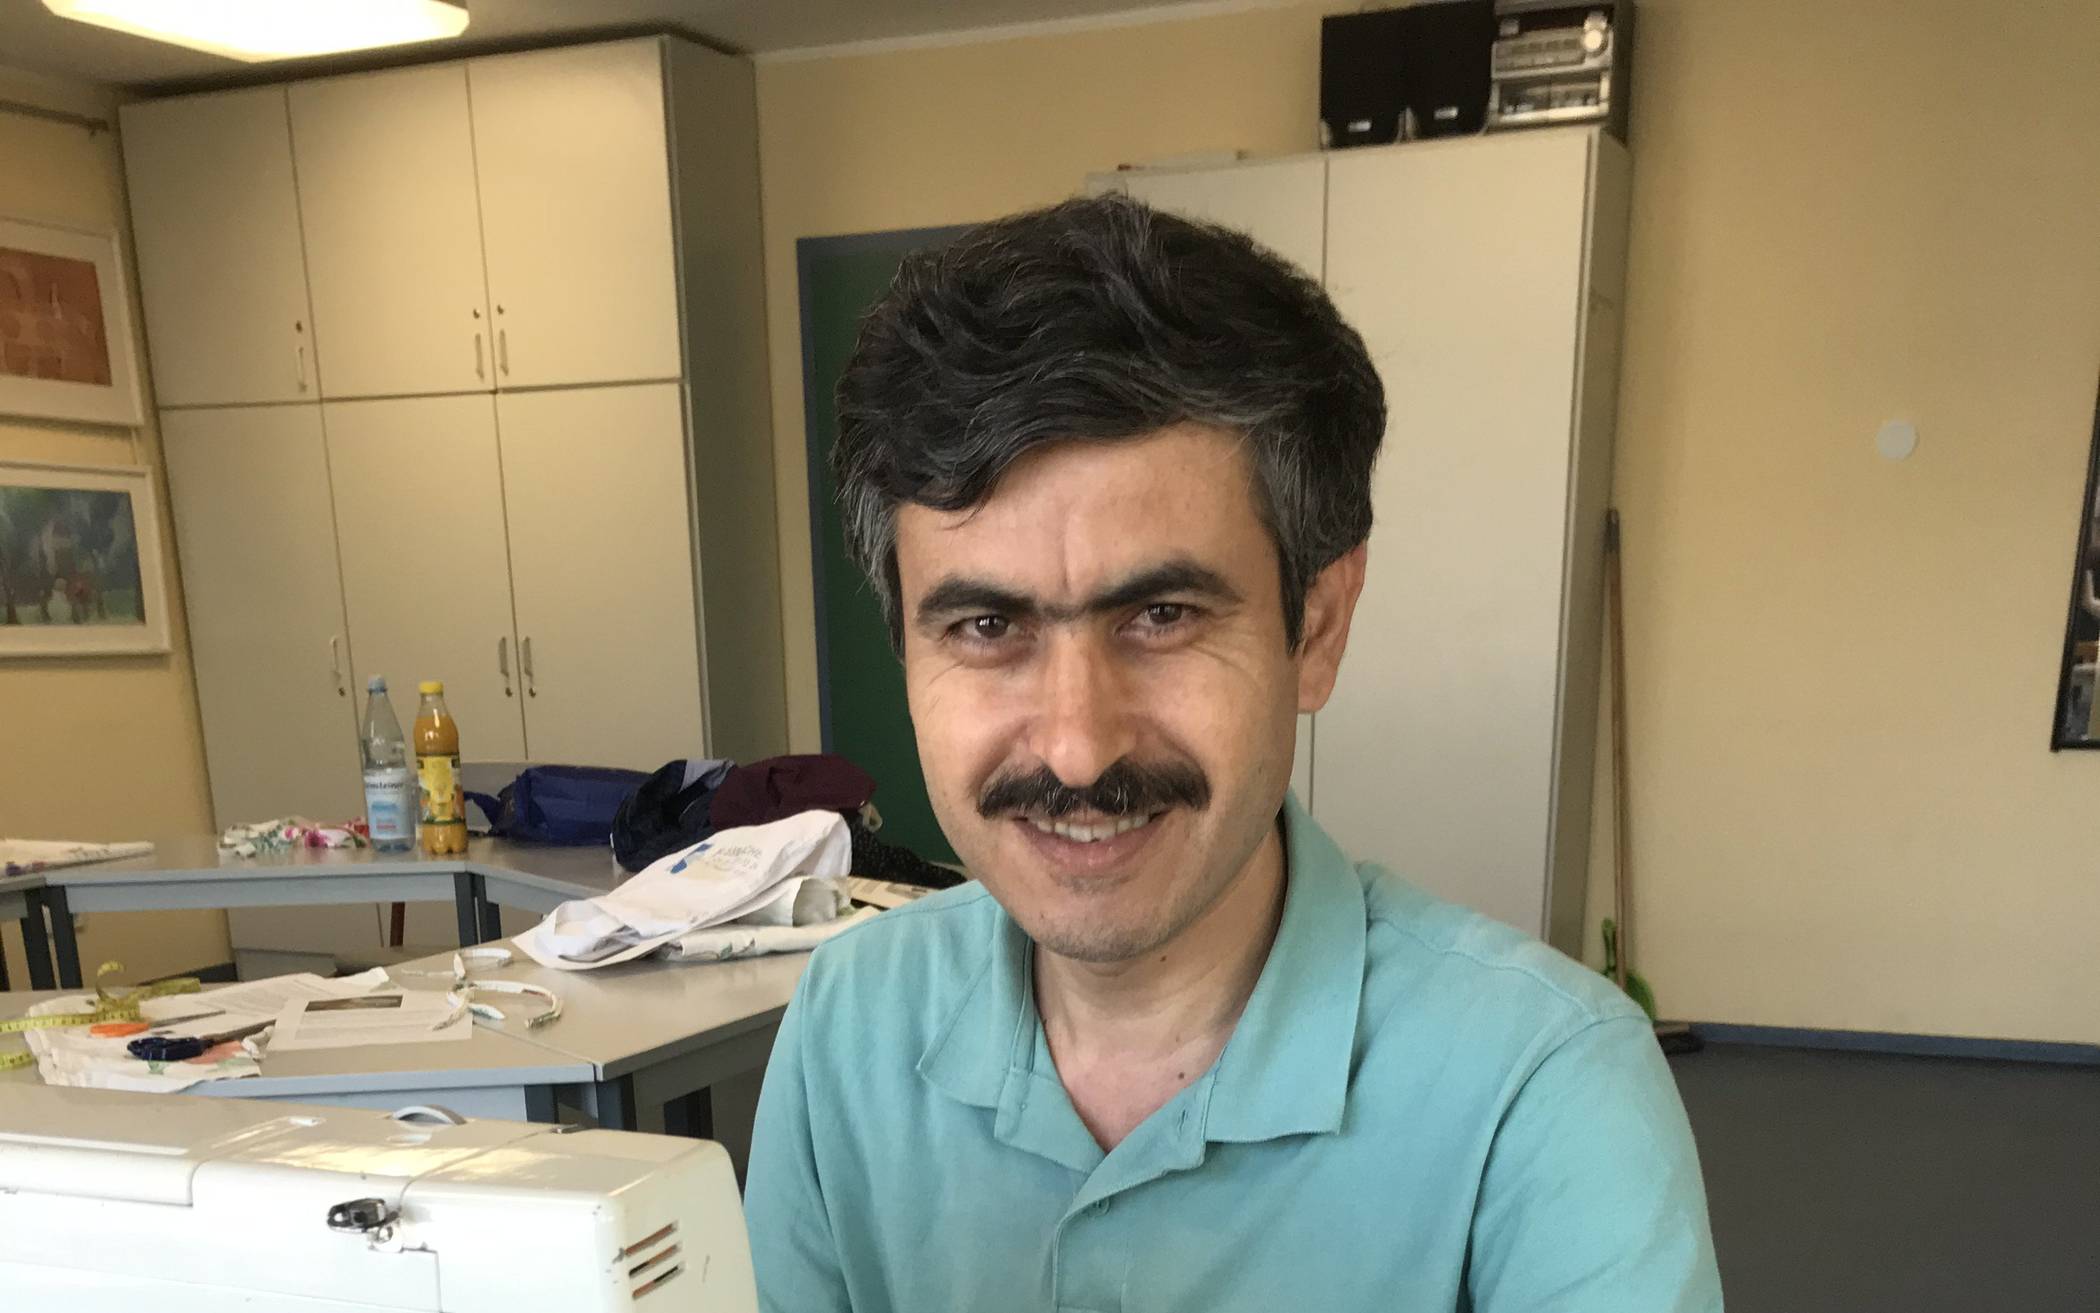  Profi-Schneider Hasan Kakaj Mohammed aus Syrien hilft in der Nähwerkstatt 